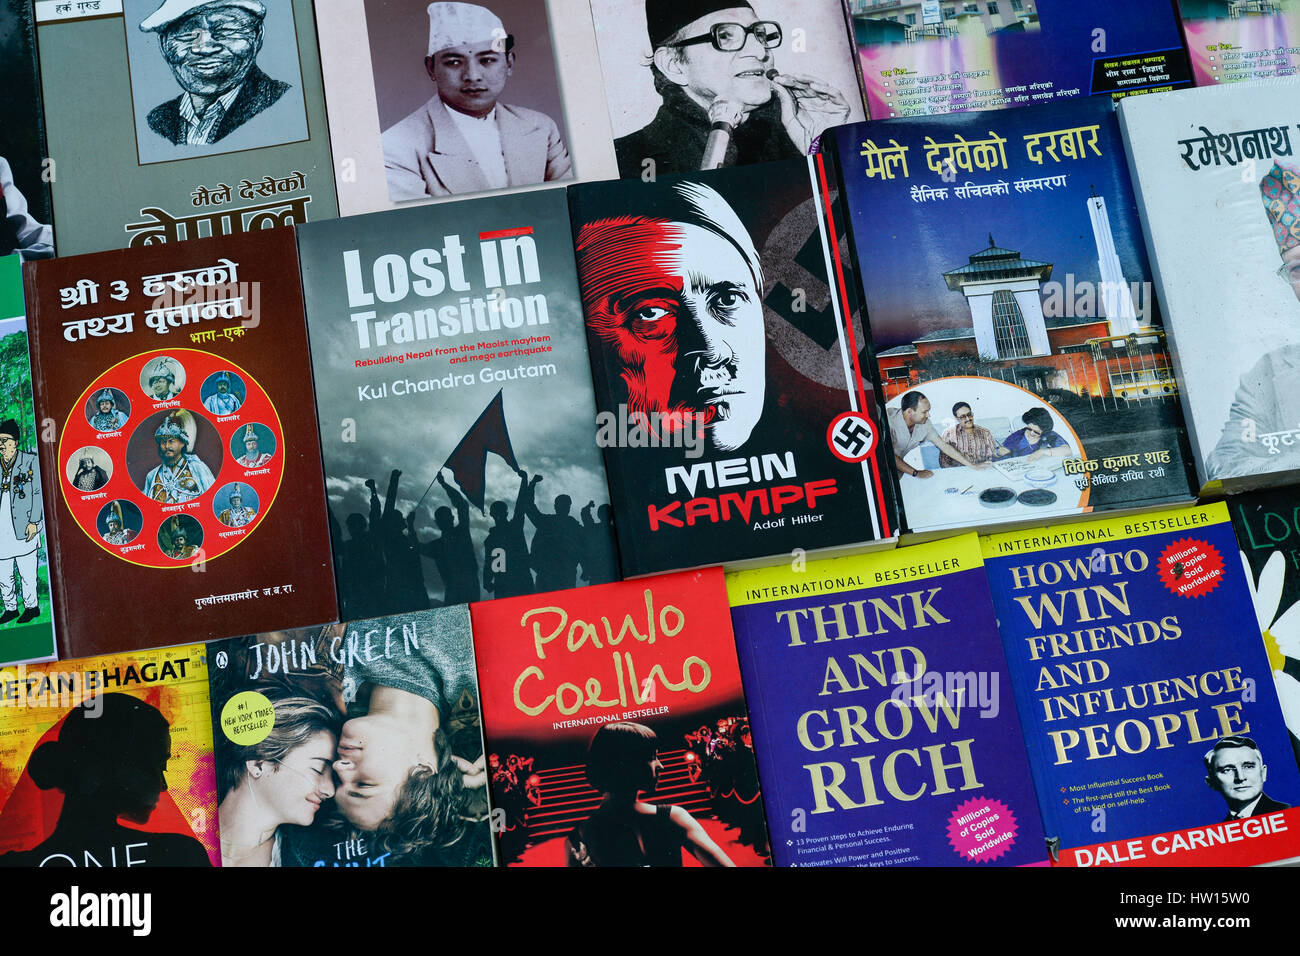 Le Népal Katmandou, vendeur de livre sur rue, vente de livre nazi d'Adolf Hitler 'Mein Kampf' mon combat à côté de Paul Coelho, John Green, pensez et devenez riche, perdu dans la transition et autres livres Banque D'Images